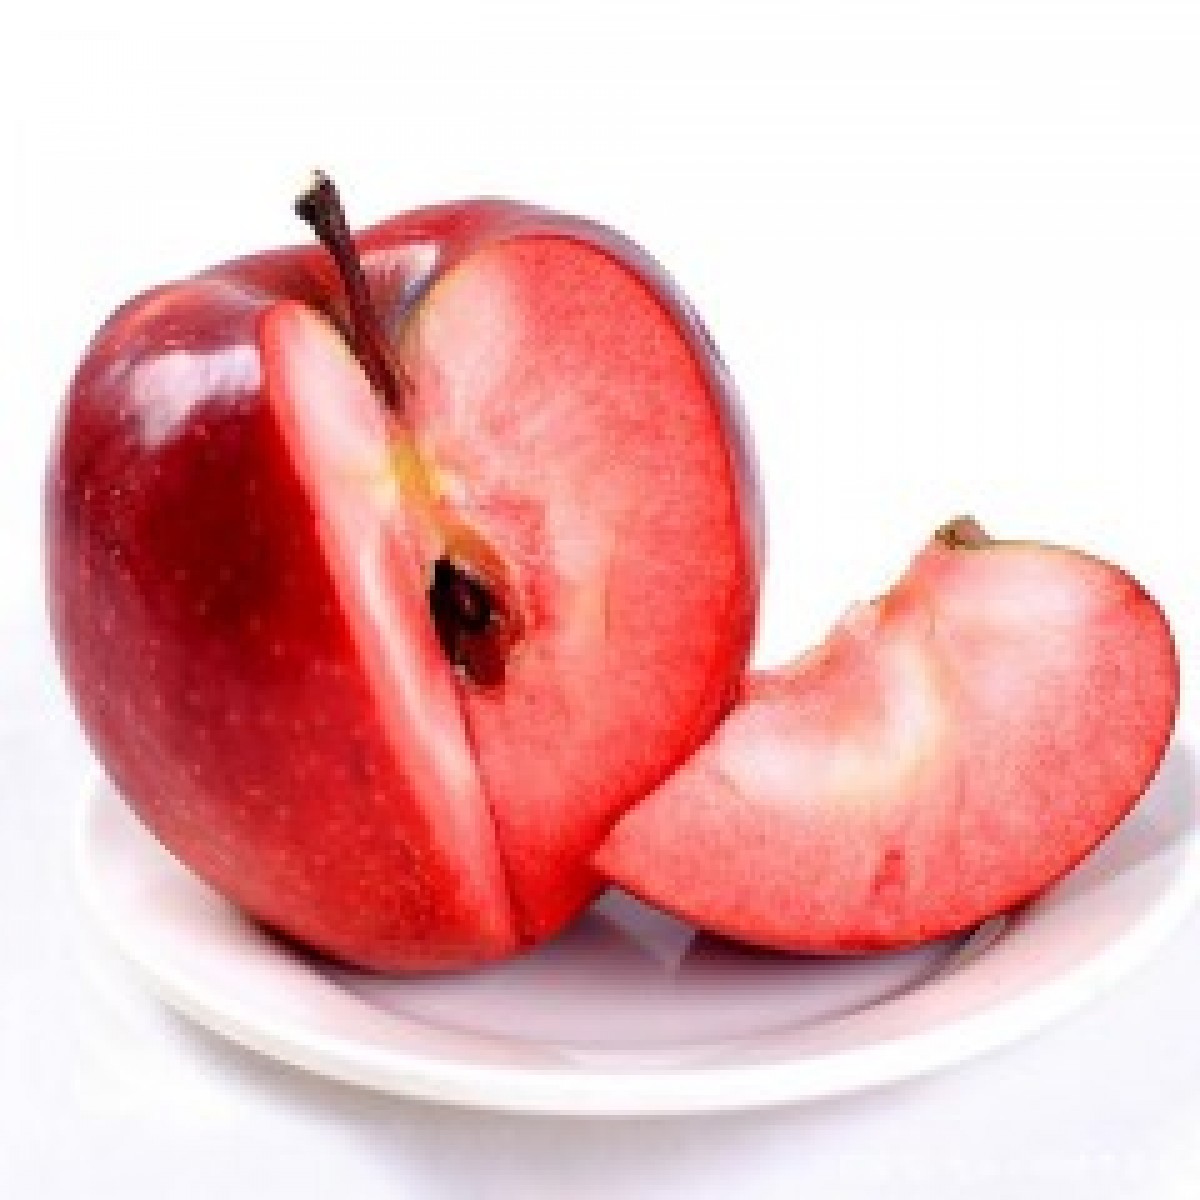 【天养农场】自然农法红心苹果当季新鲜水果新品种冰糖心红色之爱应季5斤装